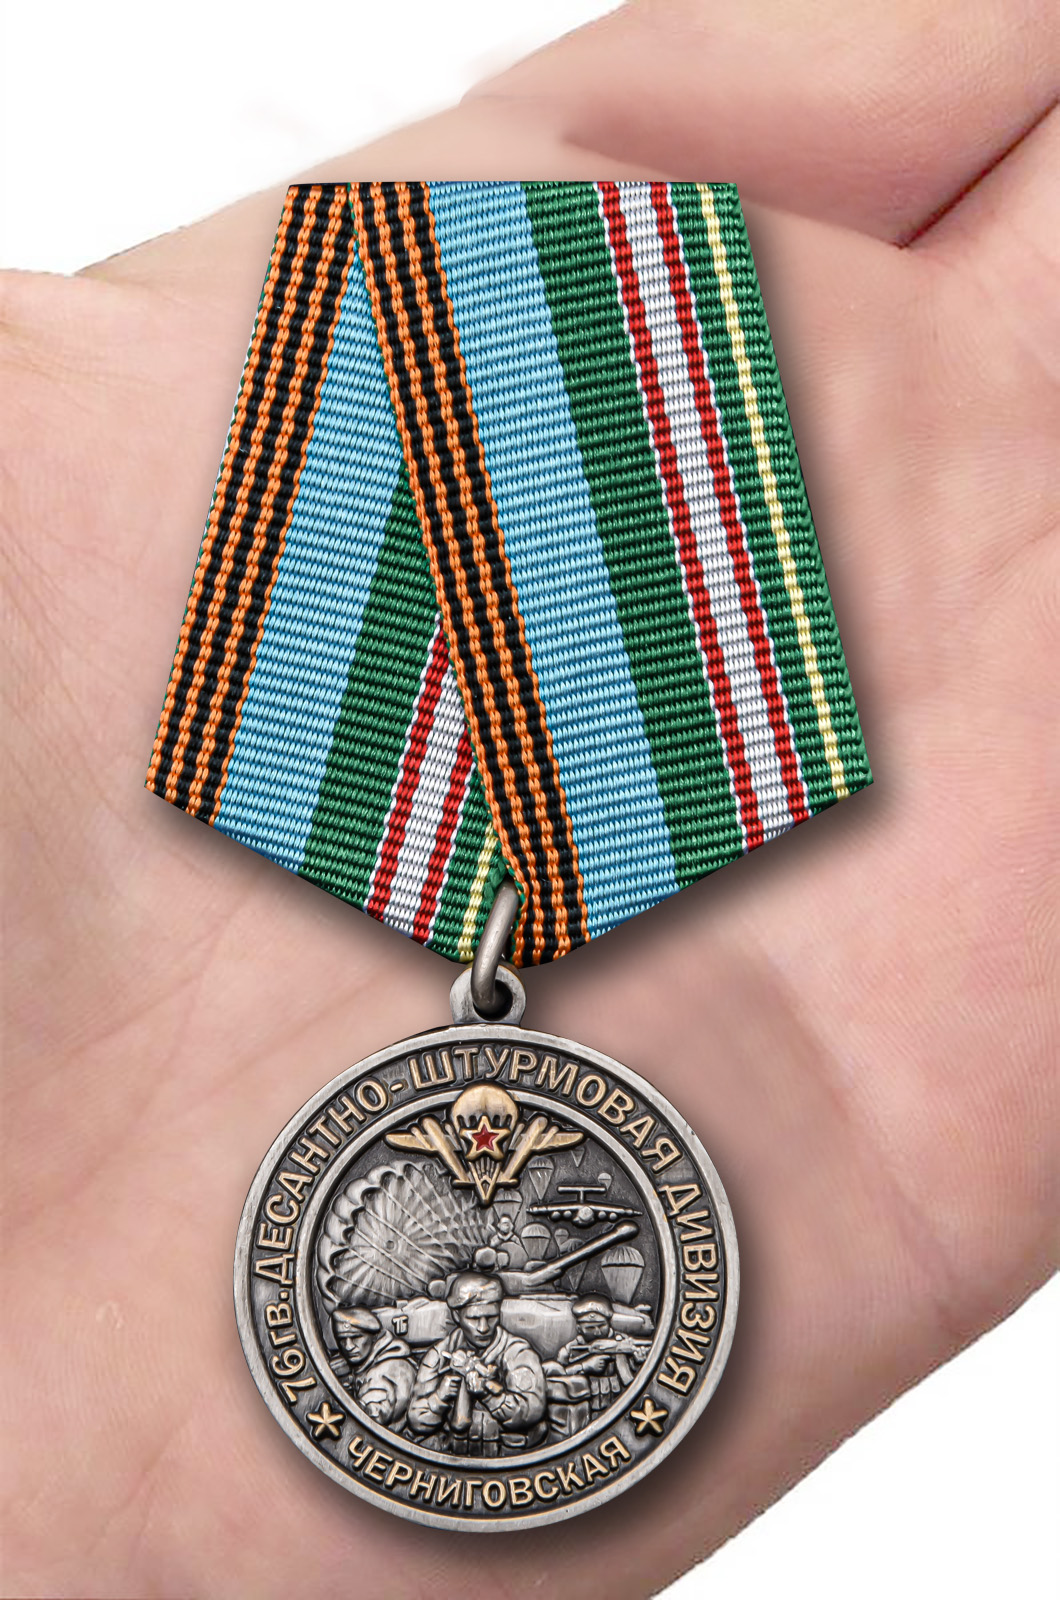 Латунная медаль "76-я гв. Десантно-штурмовая дивизия" 